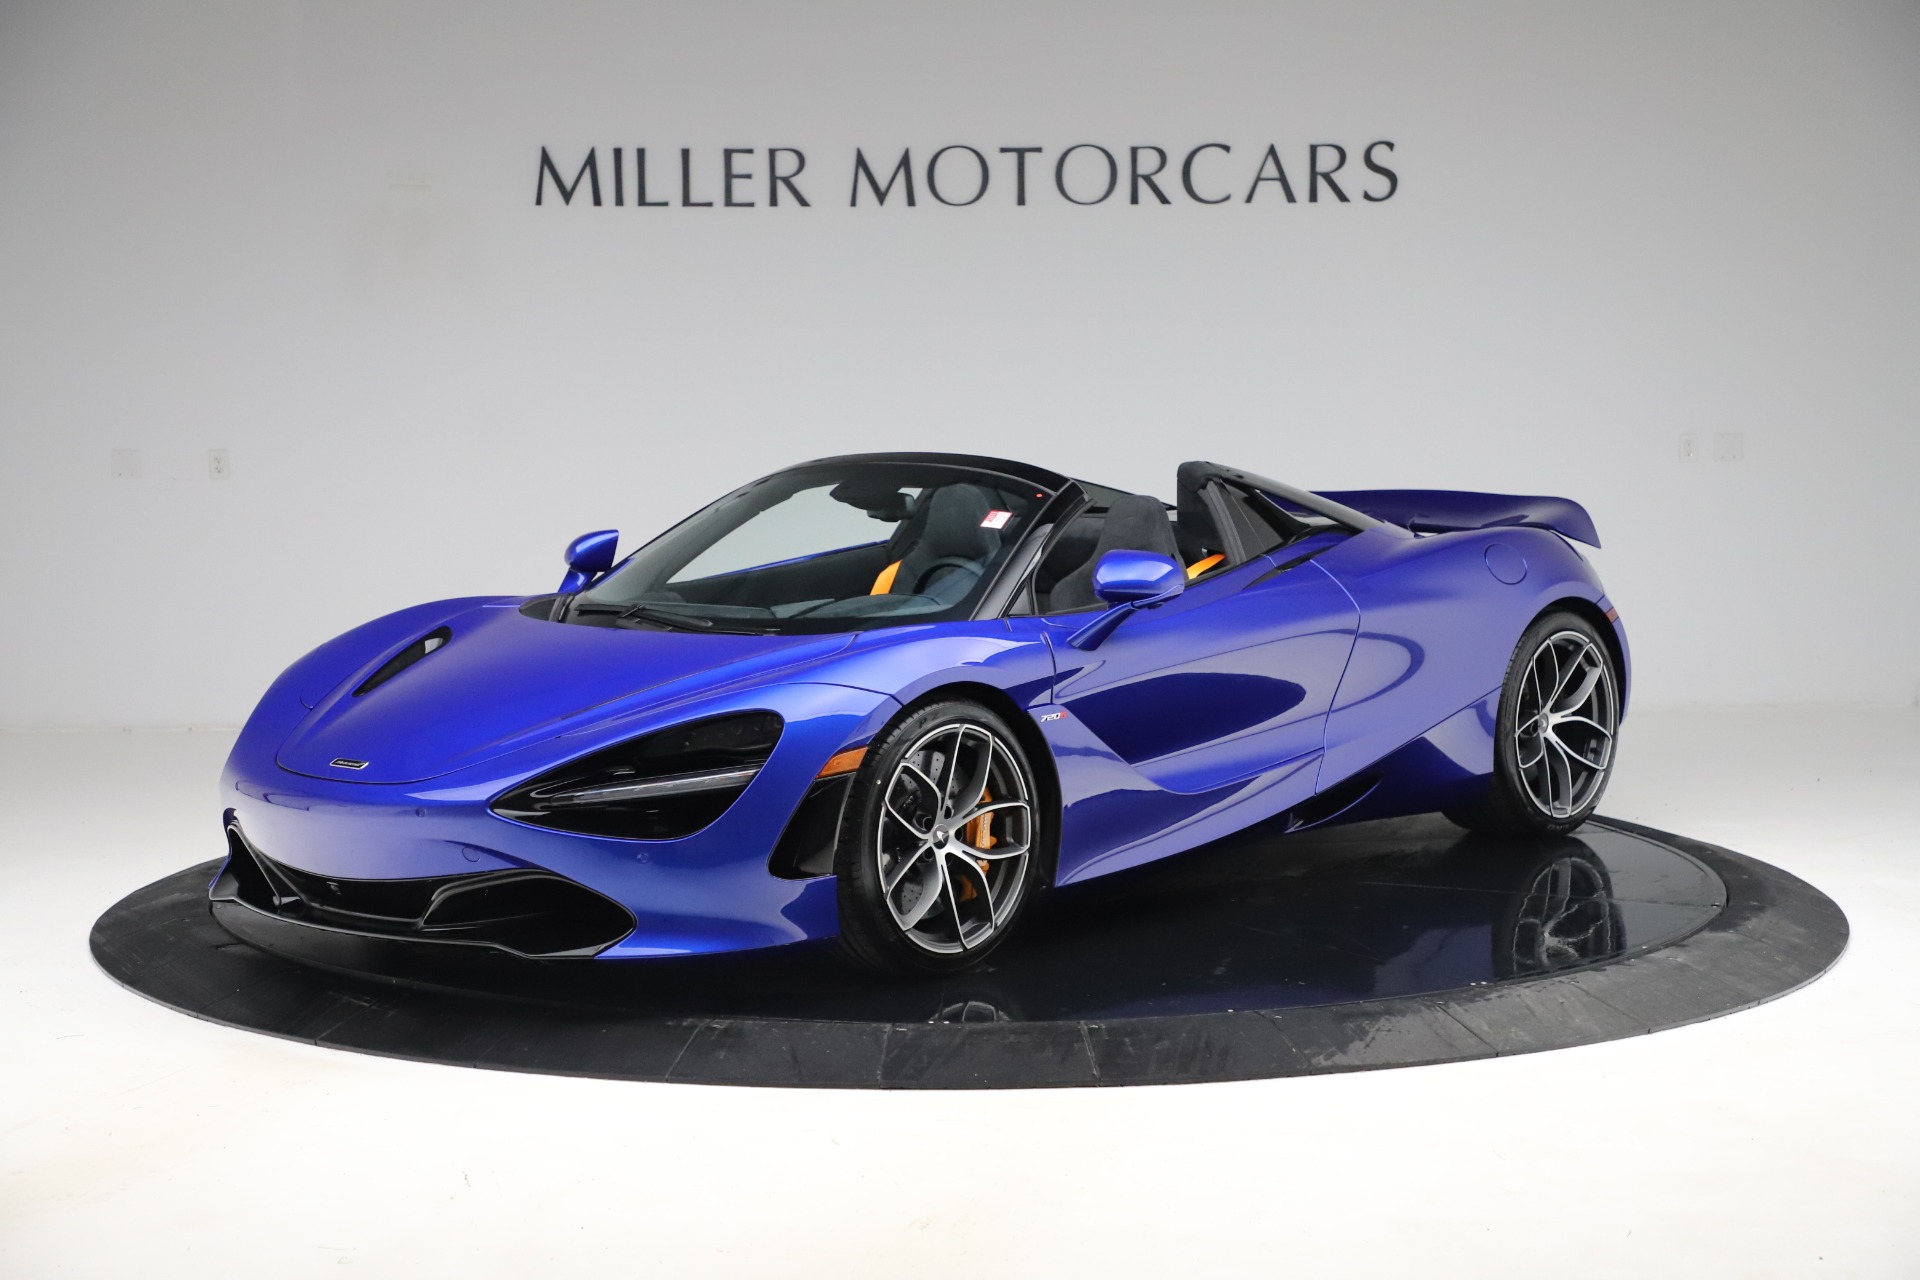 For sale : 2020 McLaren 720S Spider Convertible - Miller Motorcars